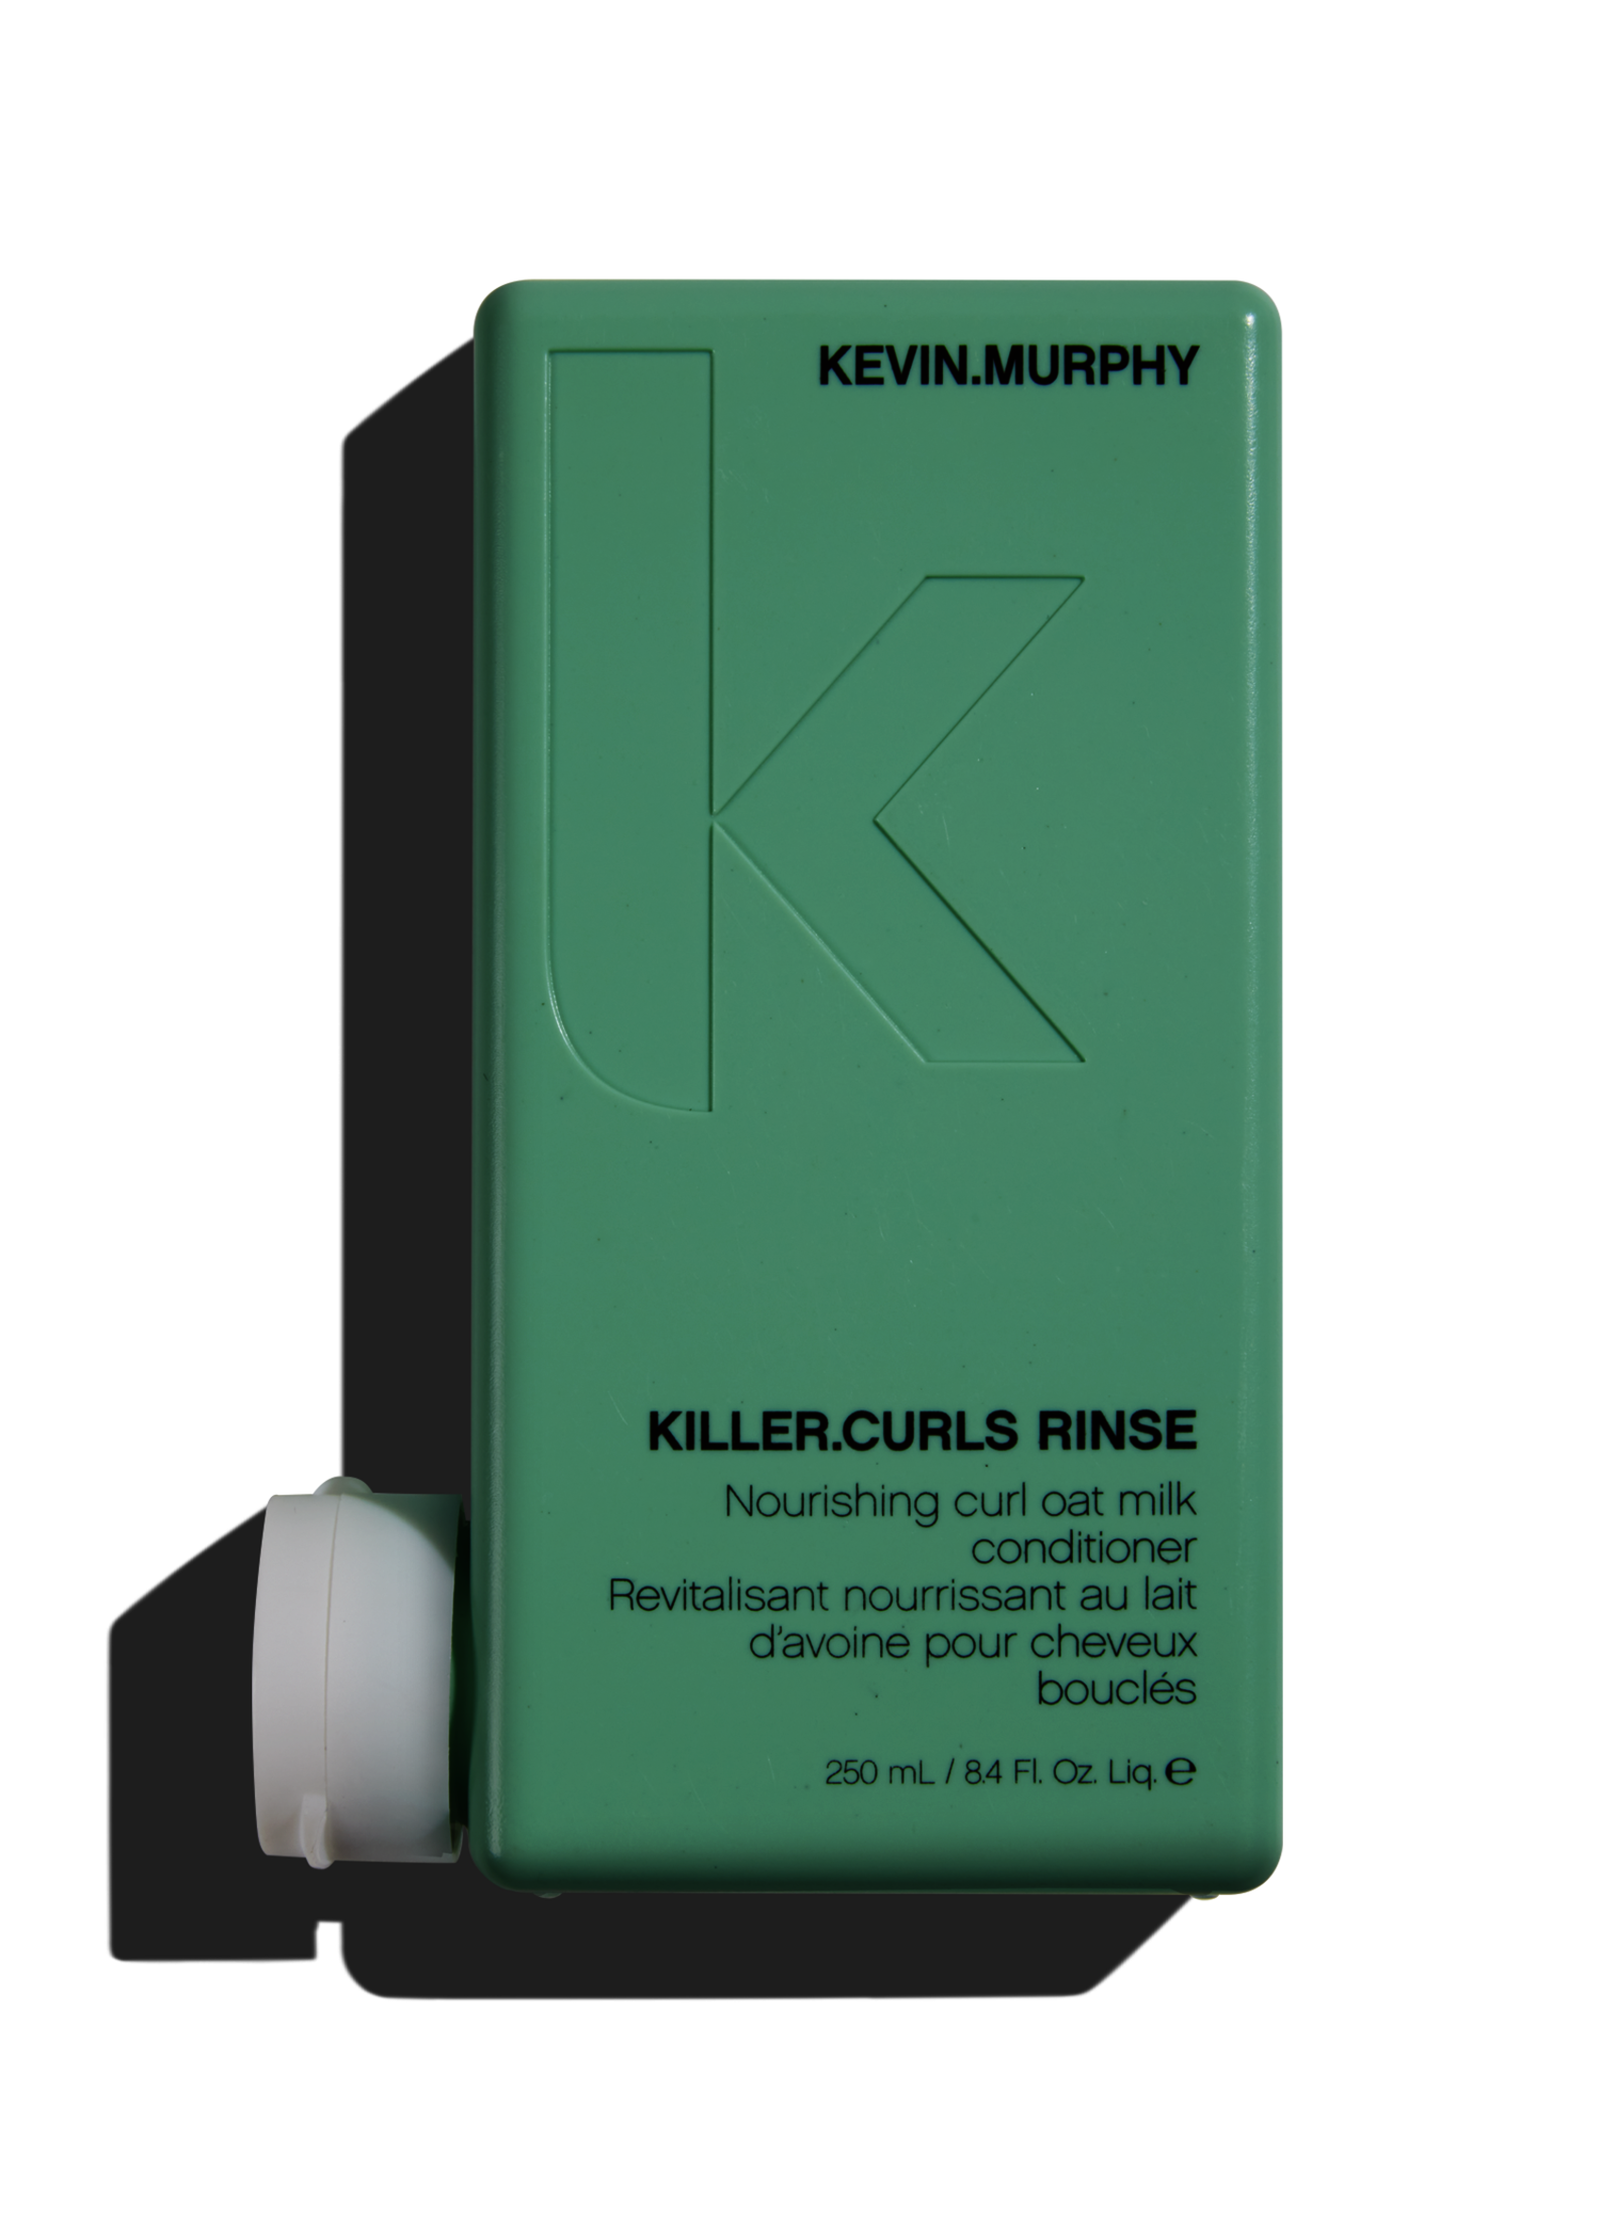 Kevin Murphy Killer Curls Rinse, de perfecte verzorging voor alle haren met krullen, sluit perfect aan bij Killer Curls Wash en easyrider.